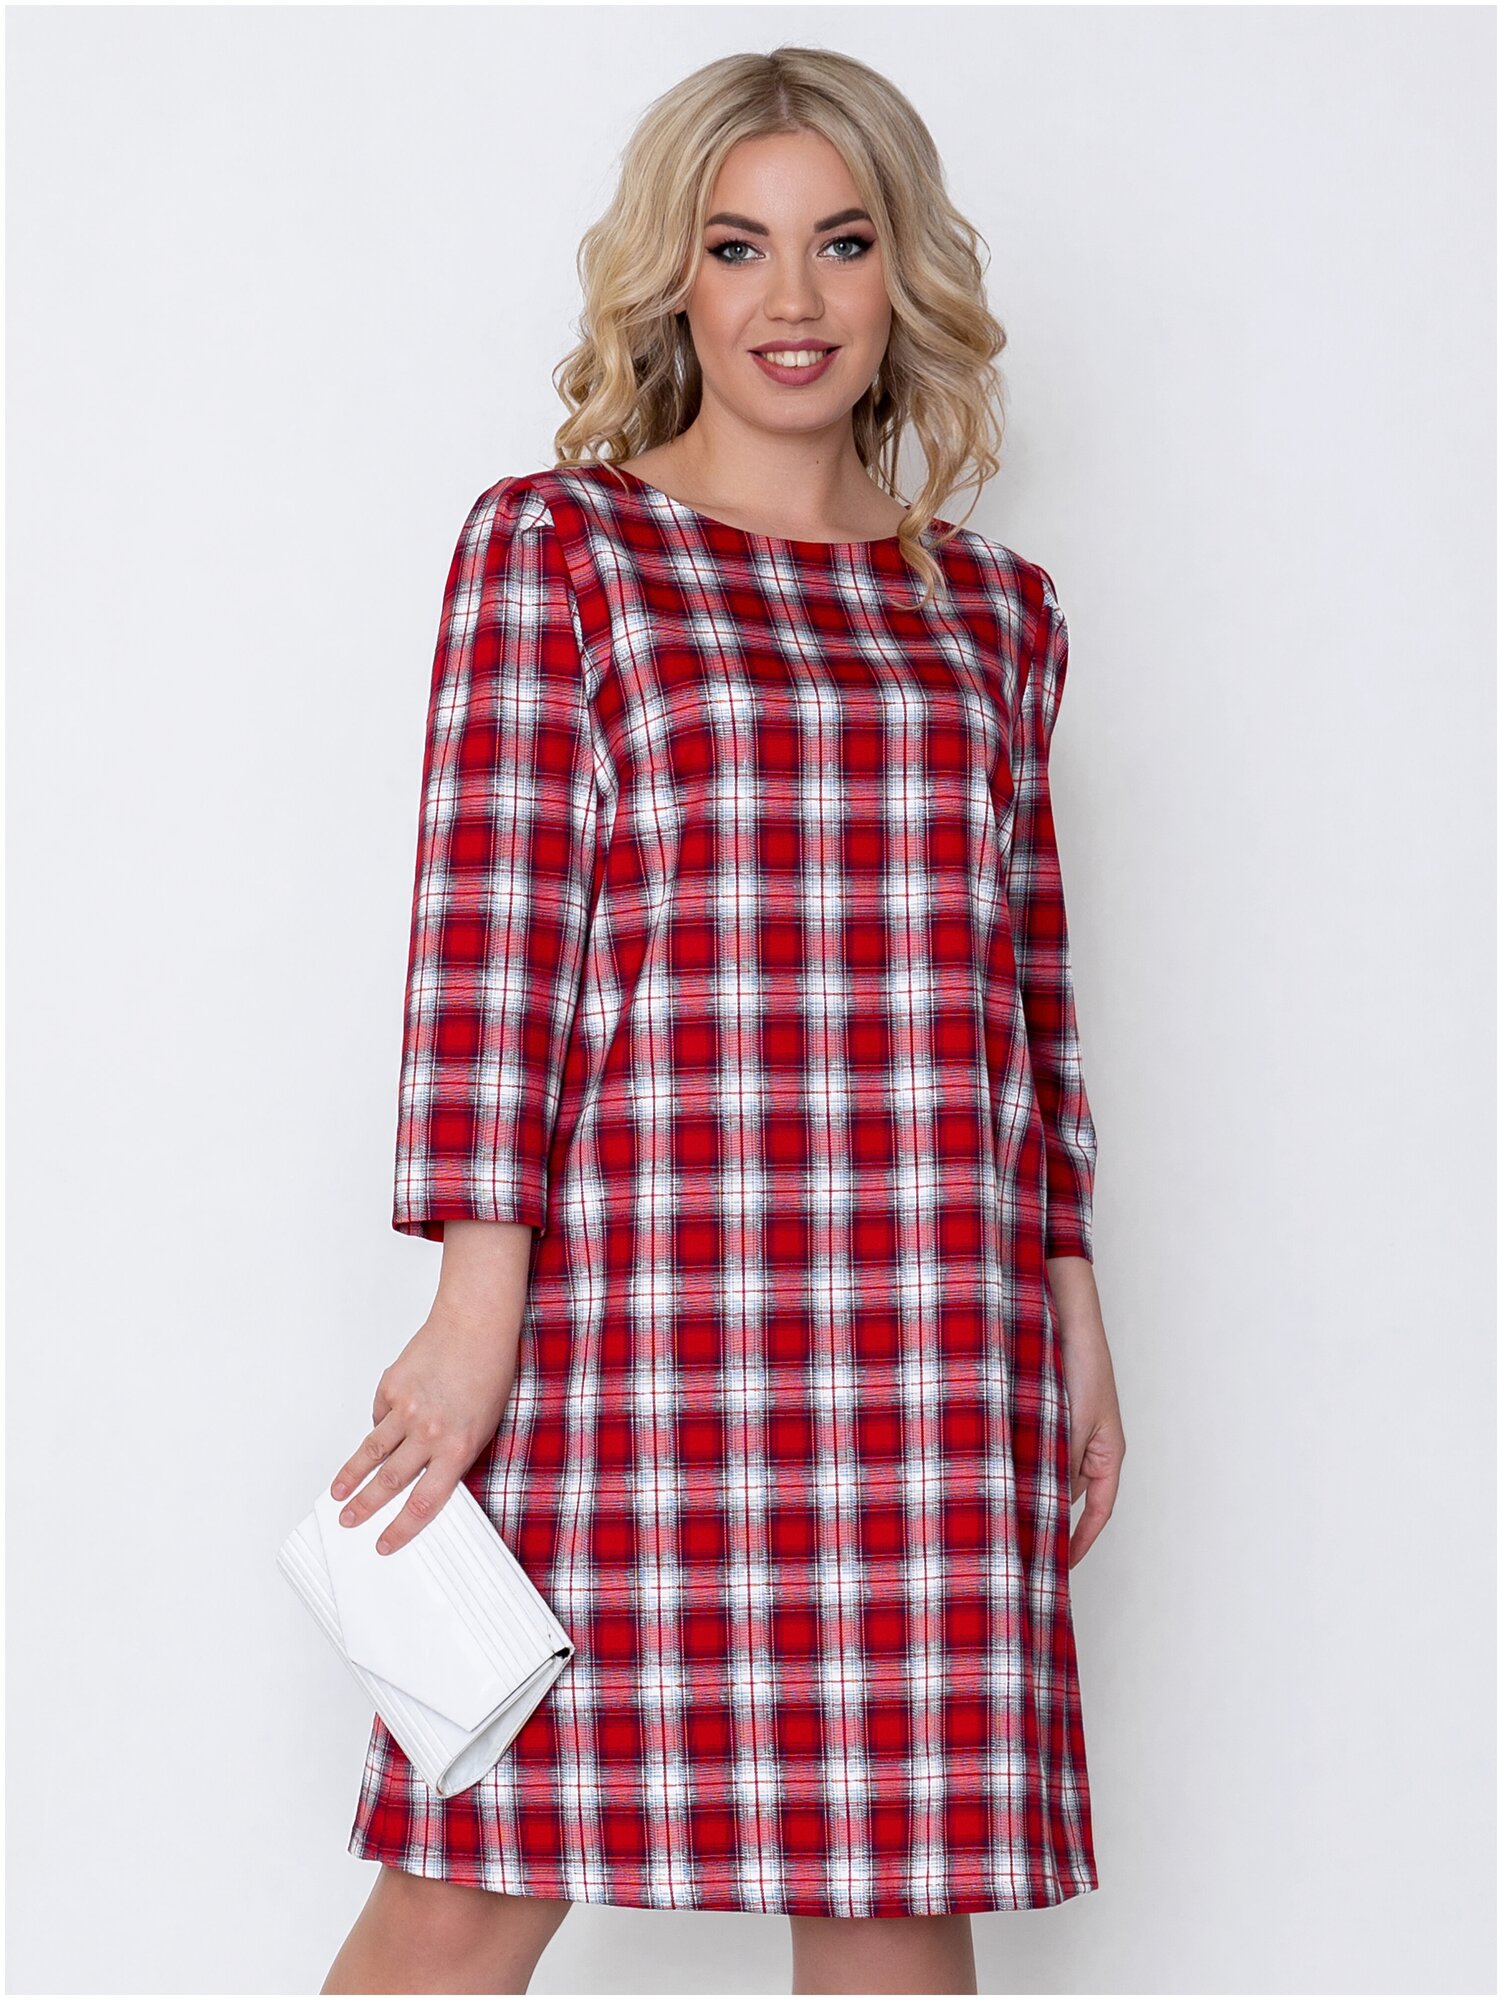 Платье With street, повседневное, свободный силуэт, миди, размер 54, красный — купить в интернет-магазине по низкой цене на Яндекс Маркете